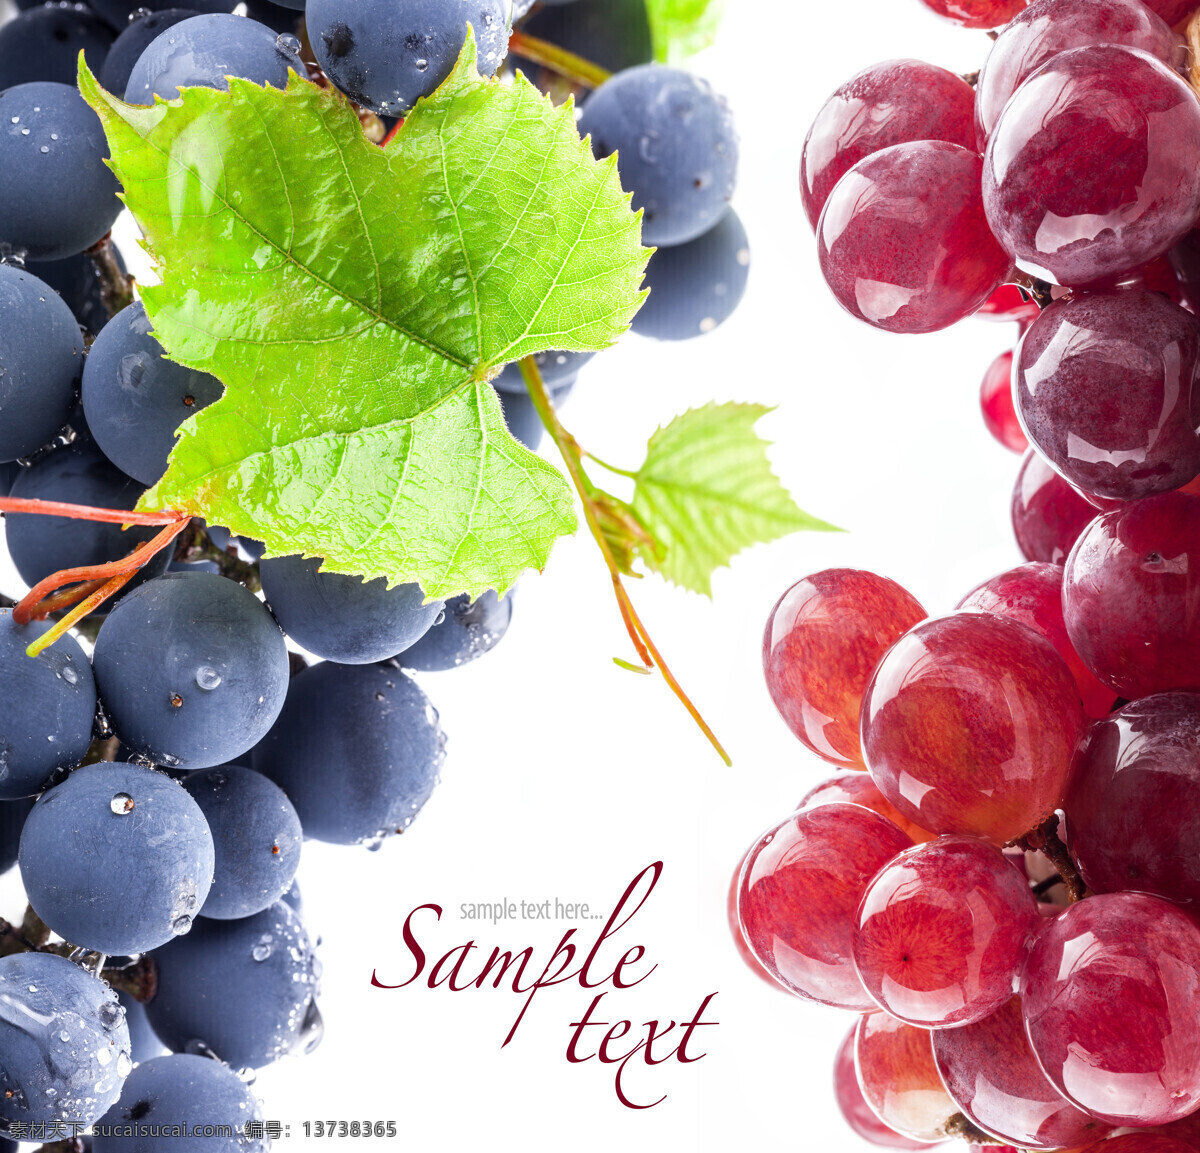 新鲜葡萄背景 葡萄 新鲜葡萄 新鲜水果 葡萄背景 水果背景 提子 果实 水果蔬菜 餐饮美食 白色